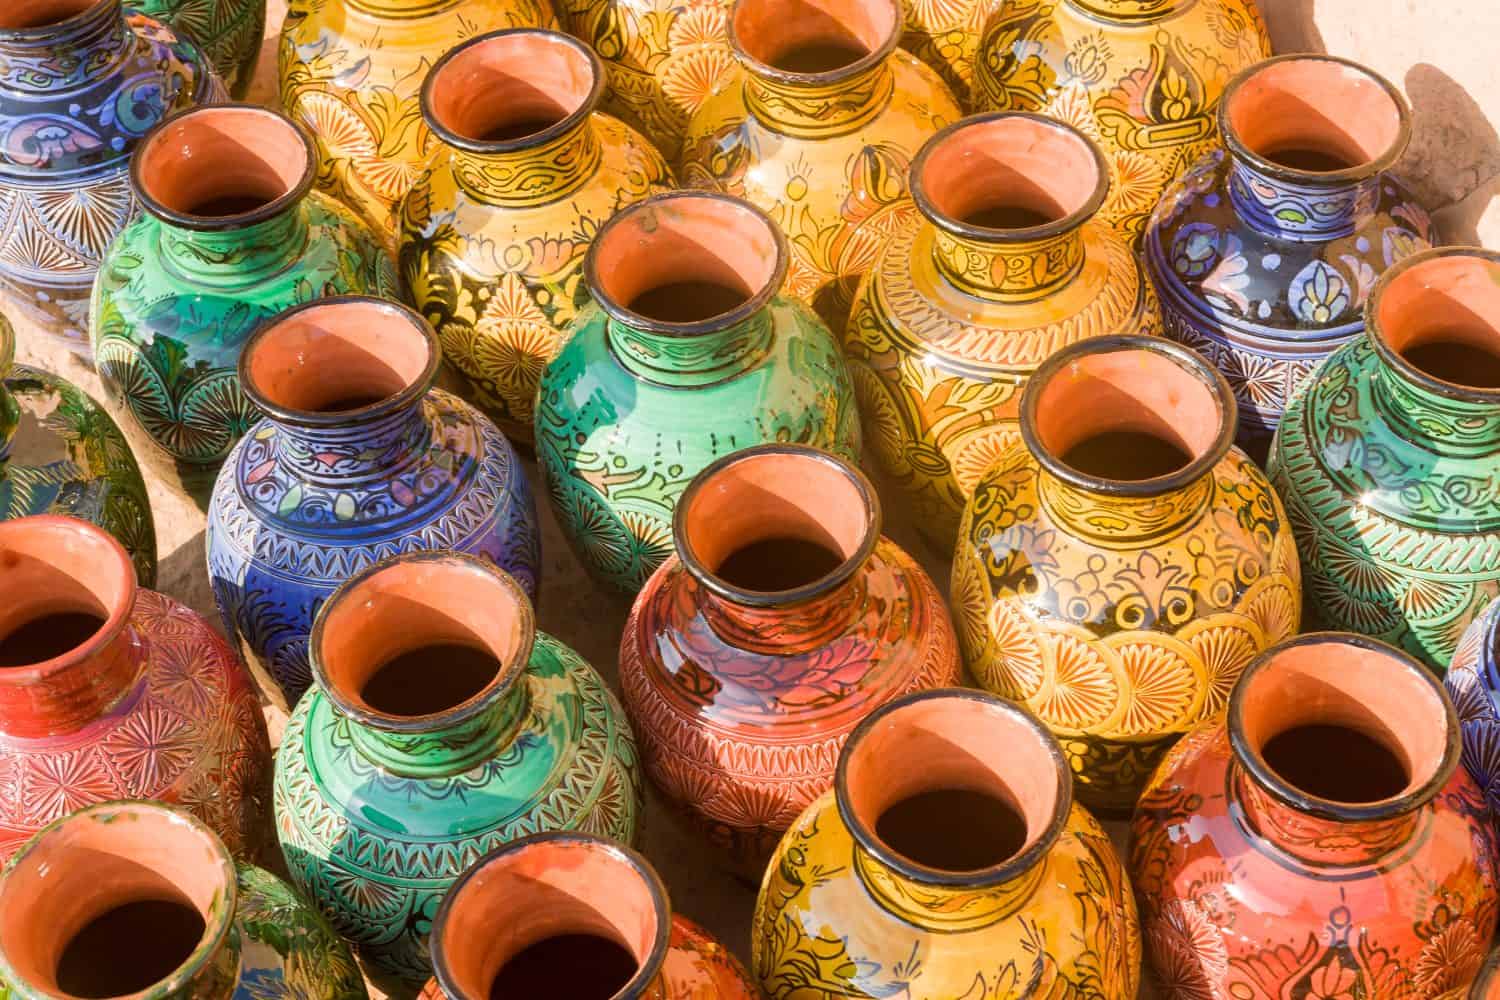 Ceramic pots at Safi, Morocco